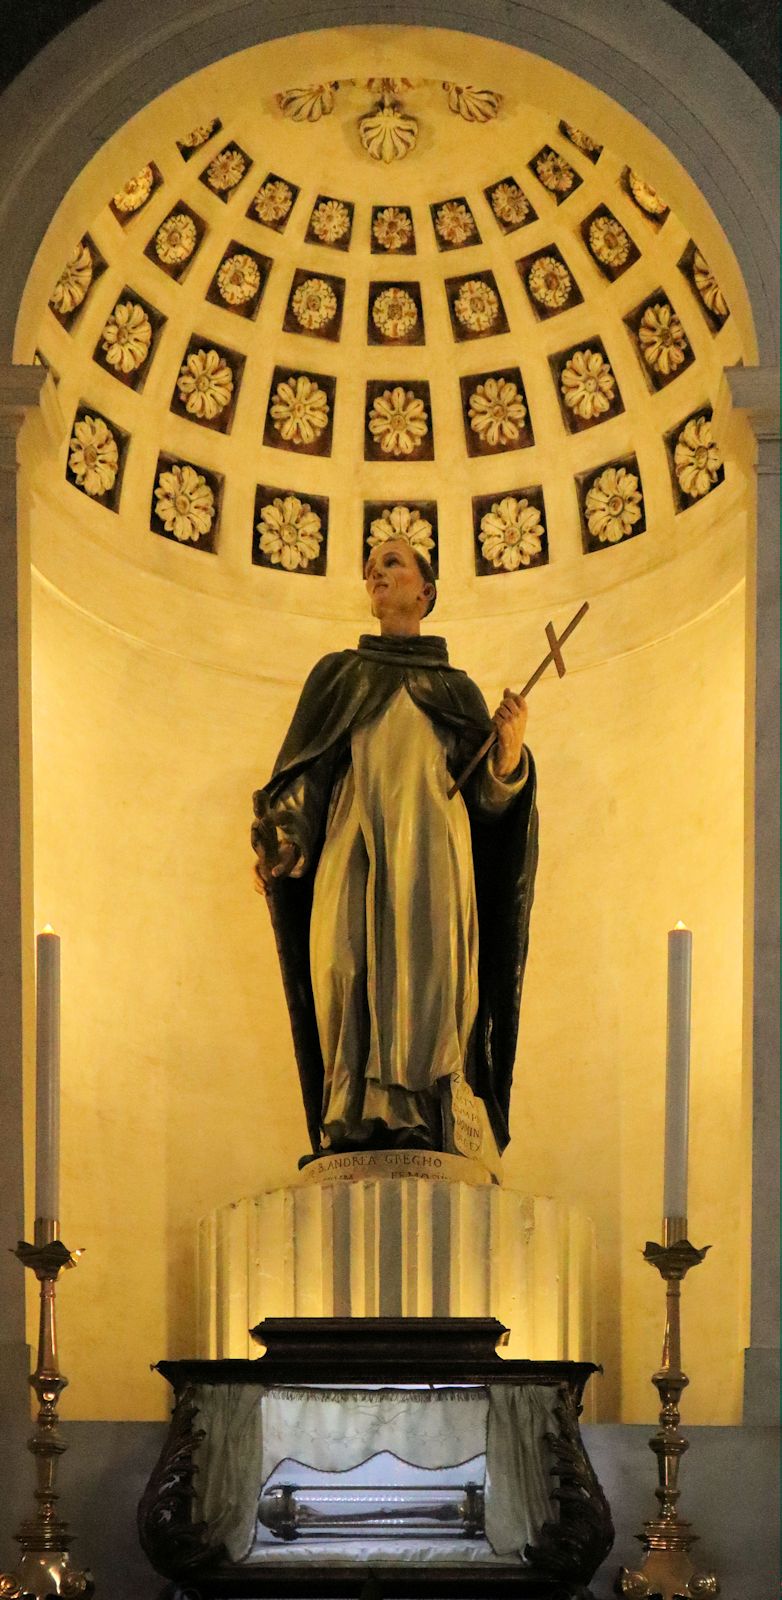 Statue und Reliquie in der Pfarrkirche in Peschiera del Garda